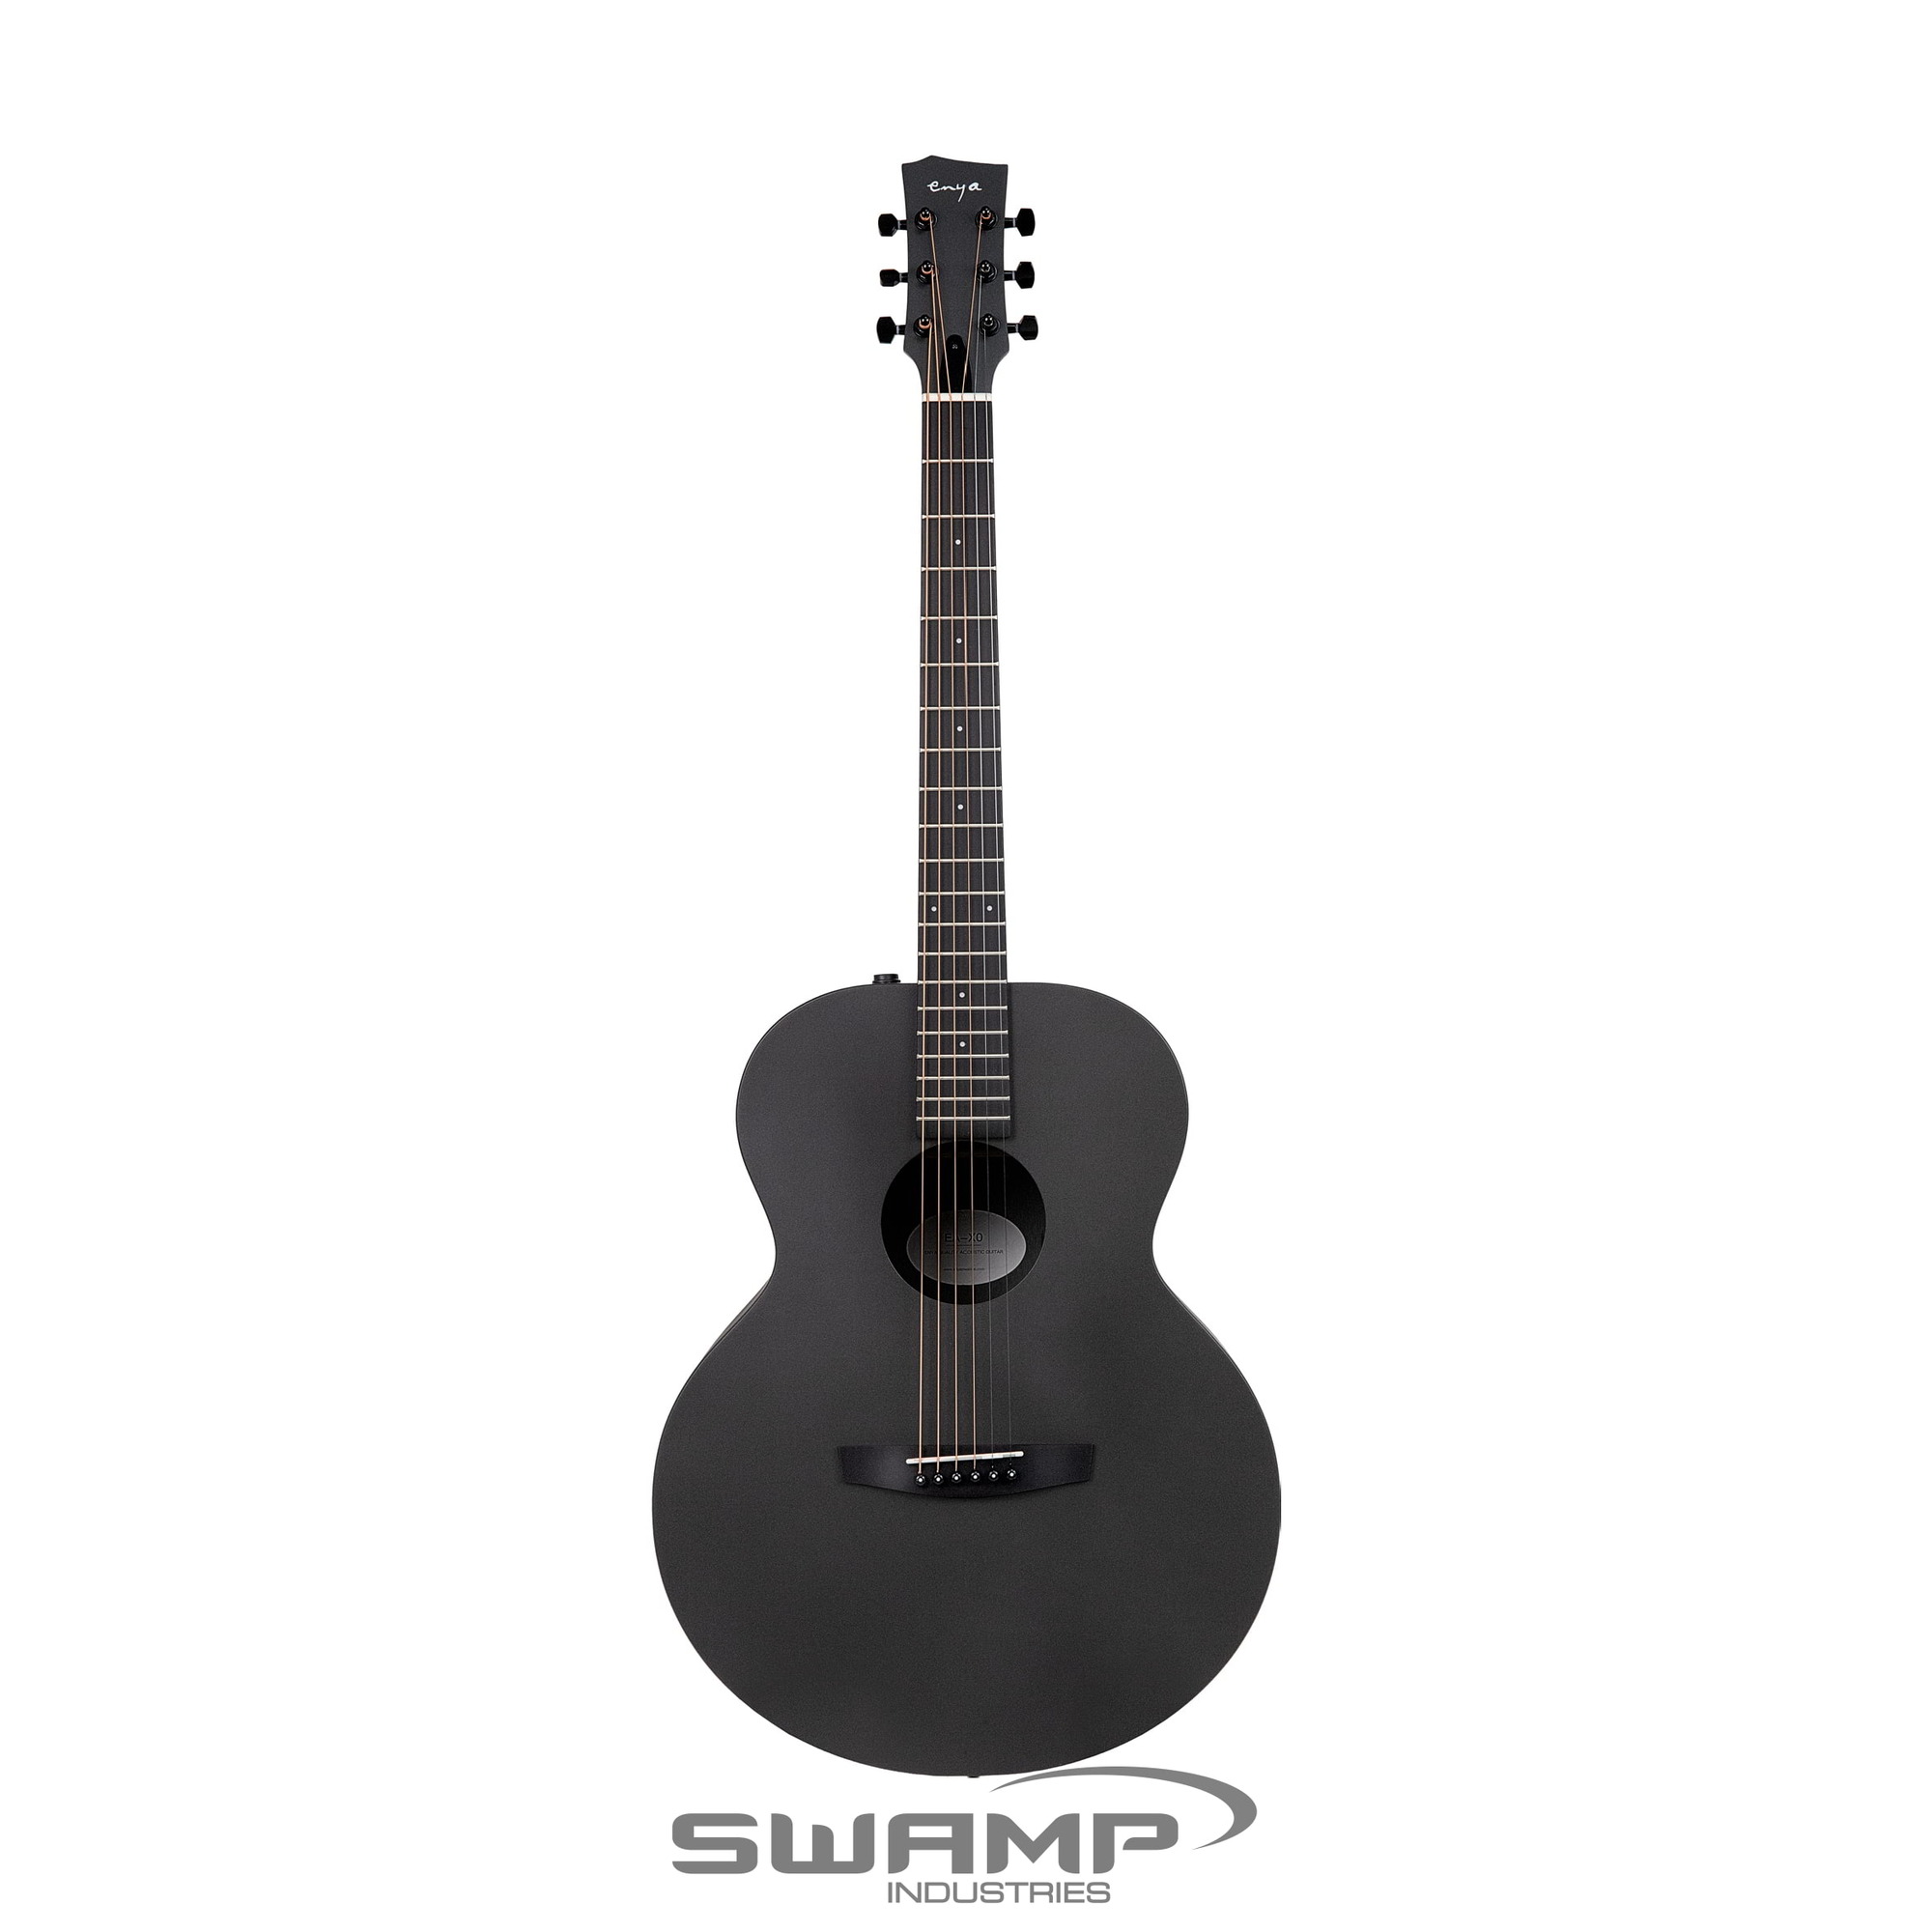 Enya X3 Pro Carbon Fibre Acoustic Electric Guitar AcousticPlus Preamp & Effects